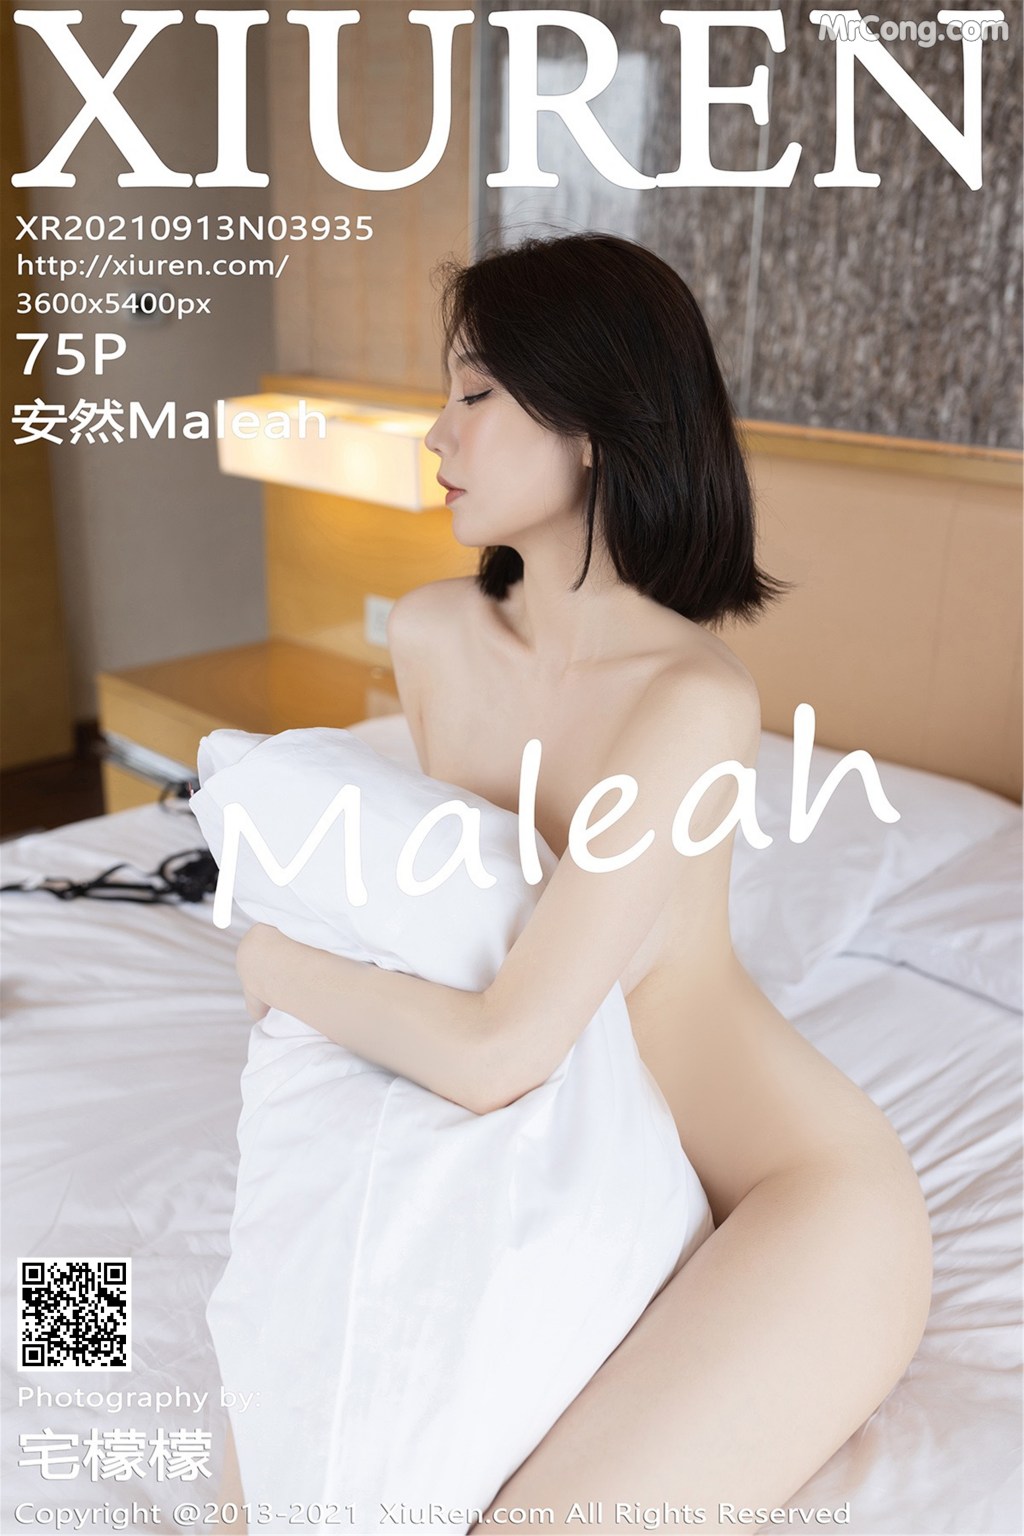 XIUREN No.3935: 安然Maleah (76 photos)